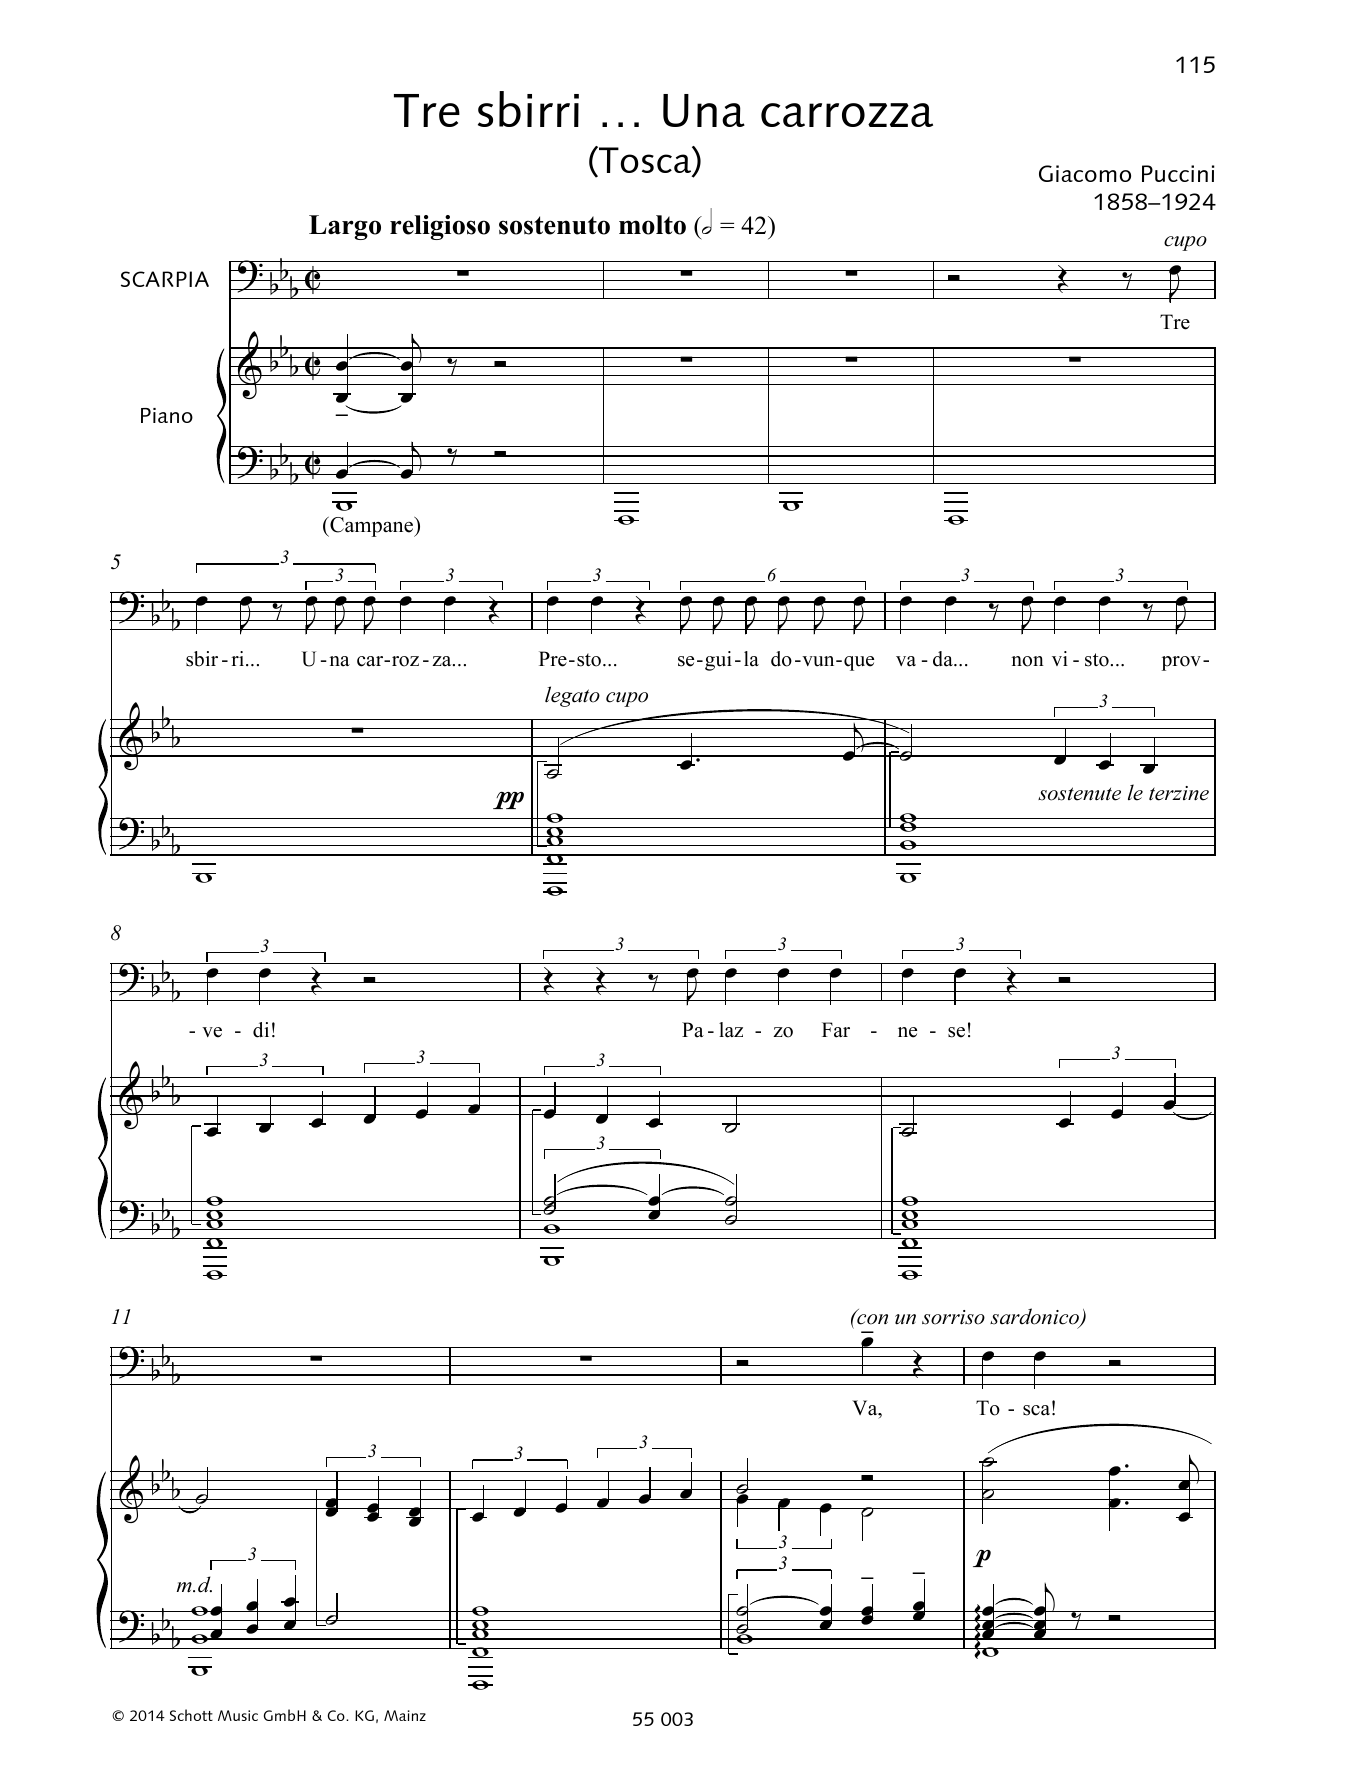 Download Giacomo Puccini Tre sbirri ... Una carrozz Sheet Music